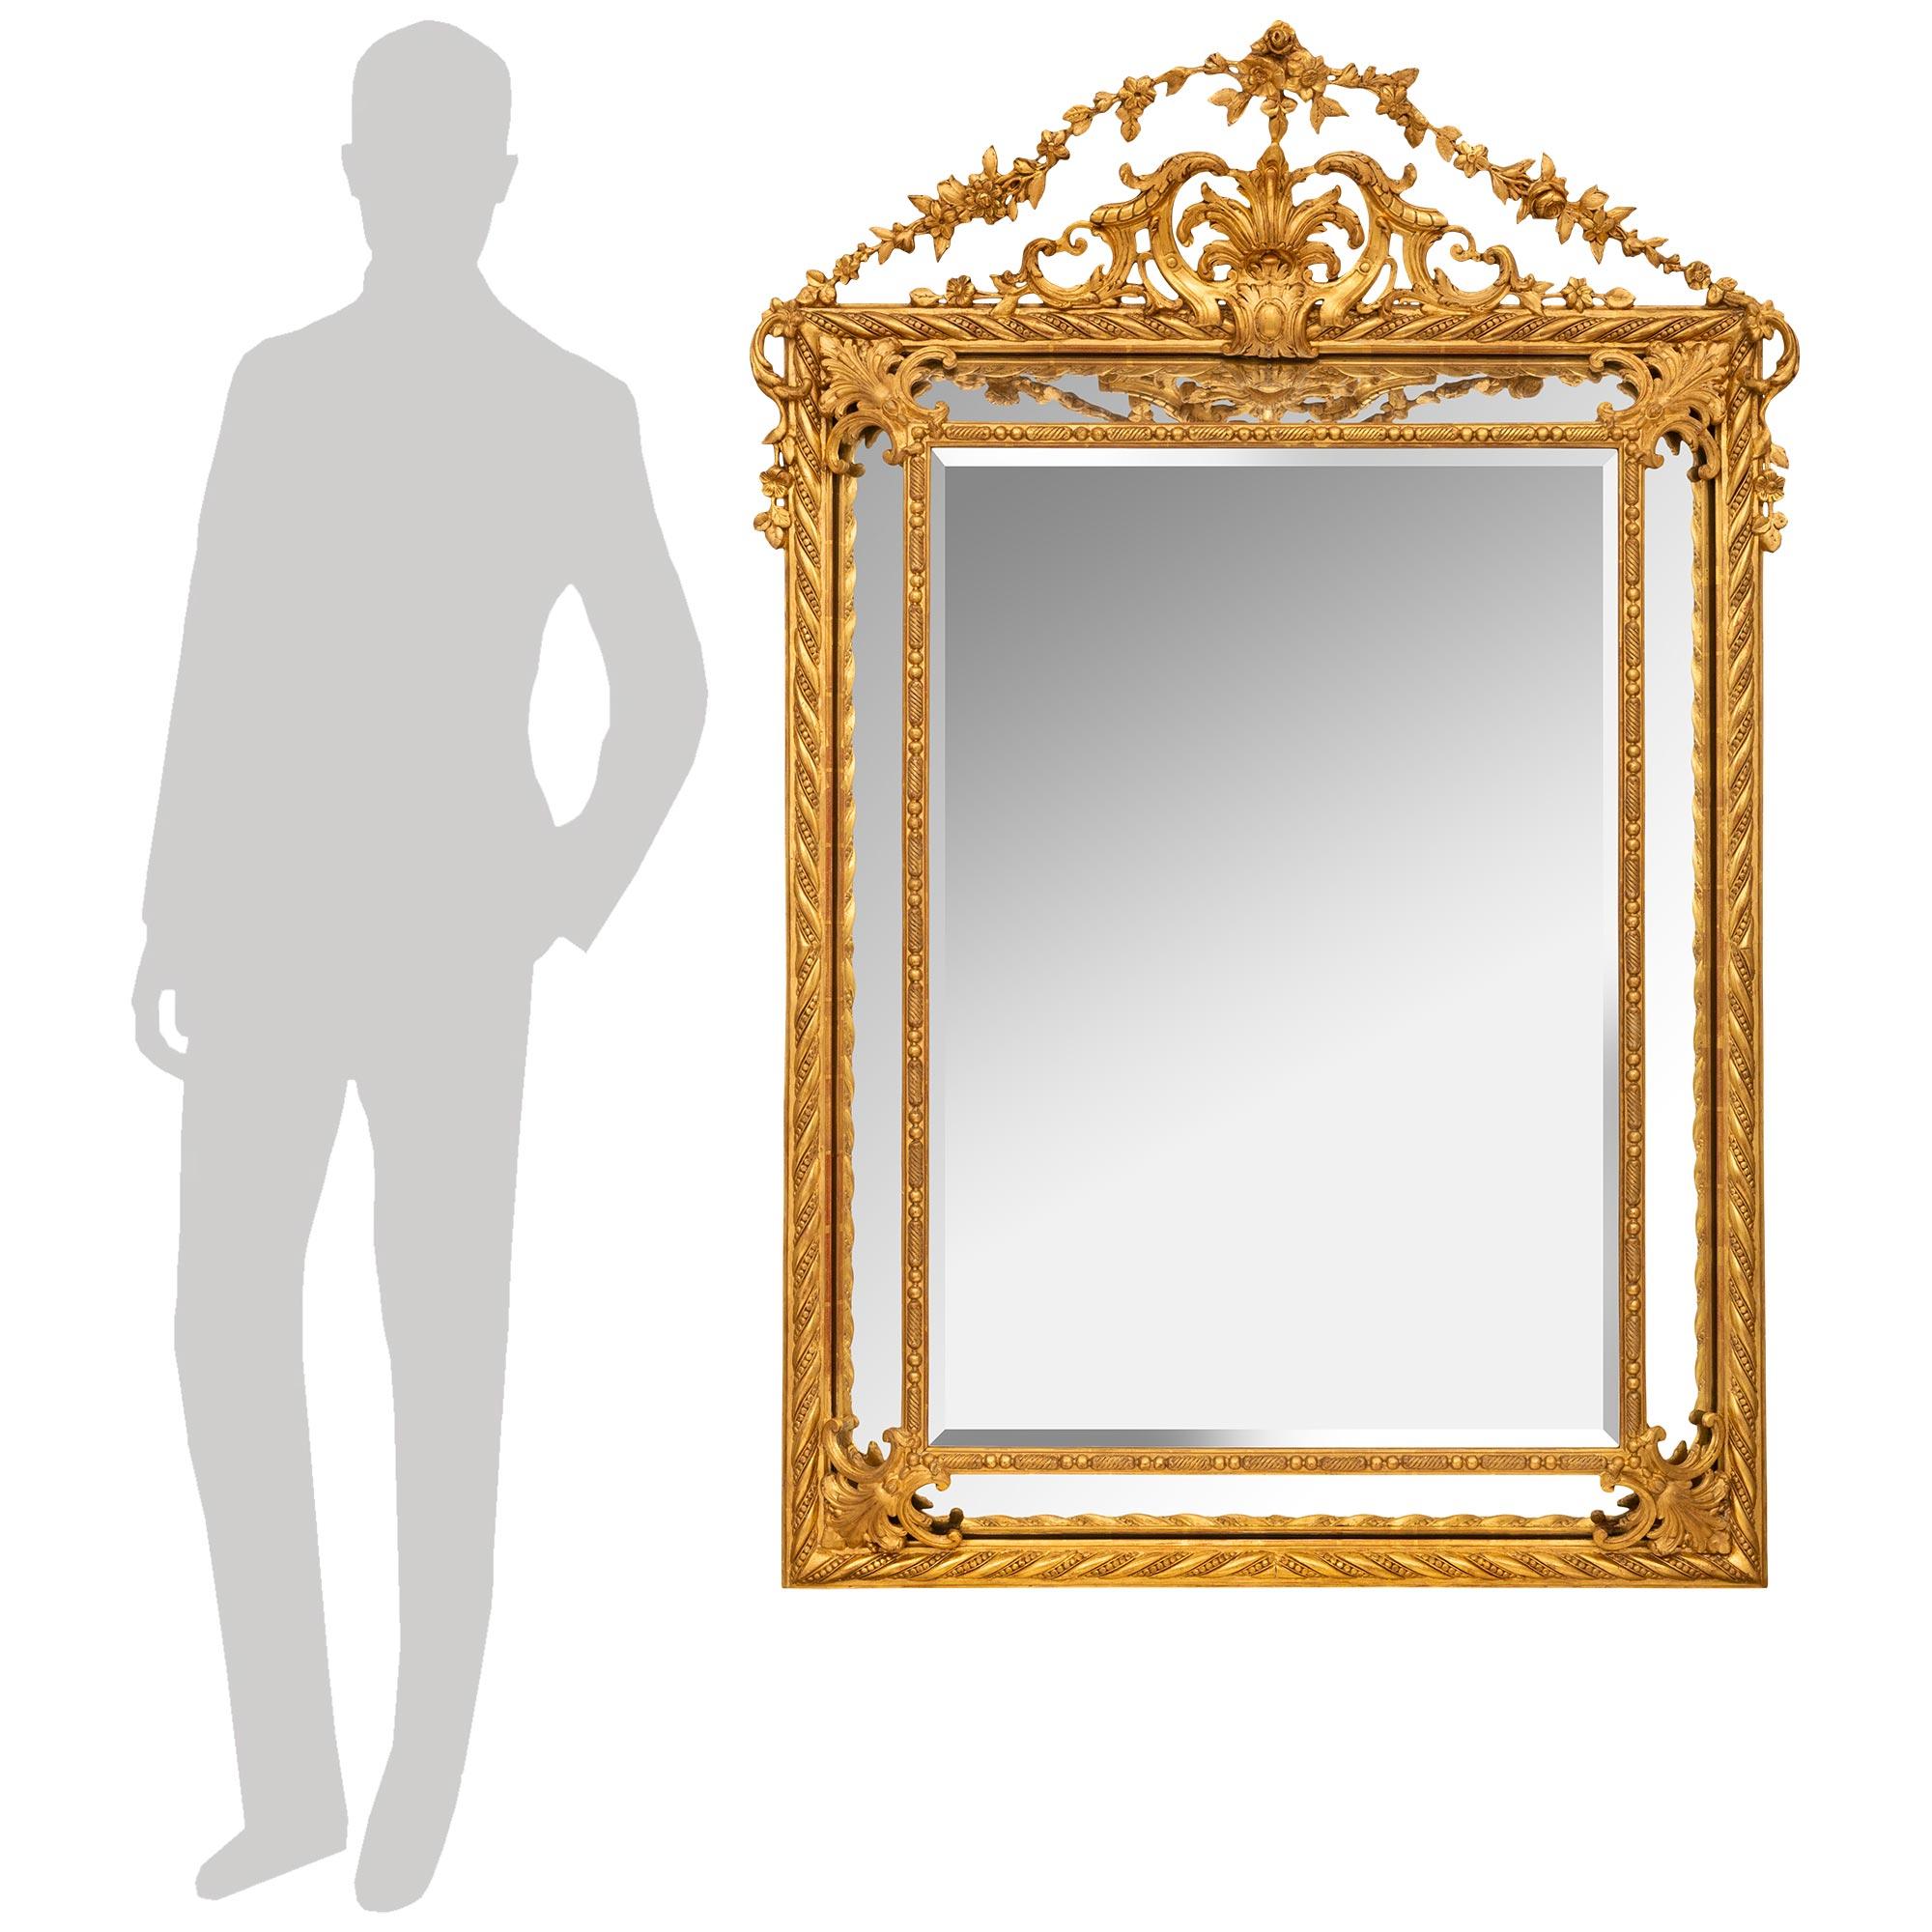 Eine exquisite Französisch 19. Jahrhundert Louis XVI st. doppelt gerahmt Giltwood Spiegel. Die zentrale, originale, abgeschrägte Spiegelplatte ist von einem fein geschnitzten, perlenartigen und verdrehten Muster umrahmt, während die originalen,